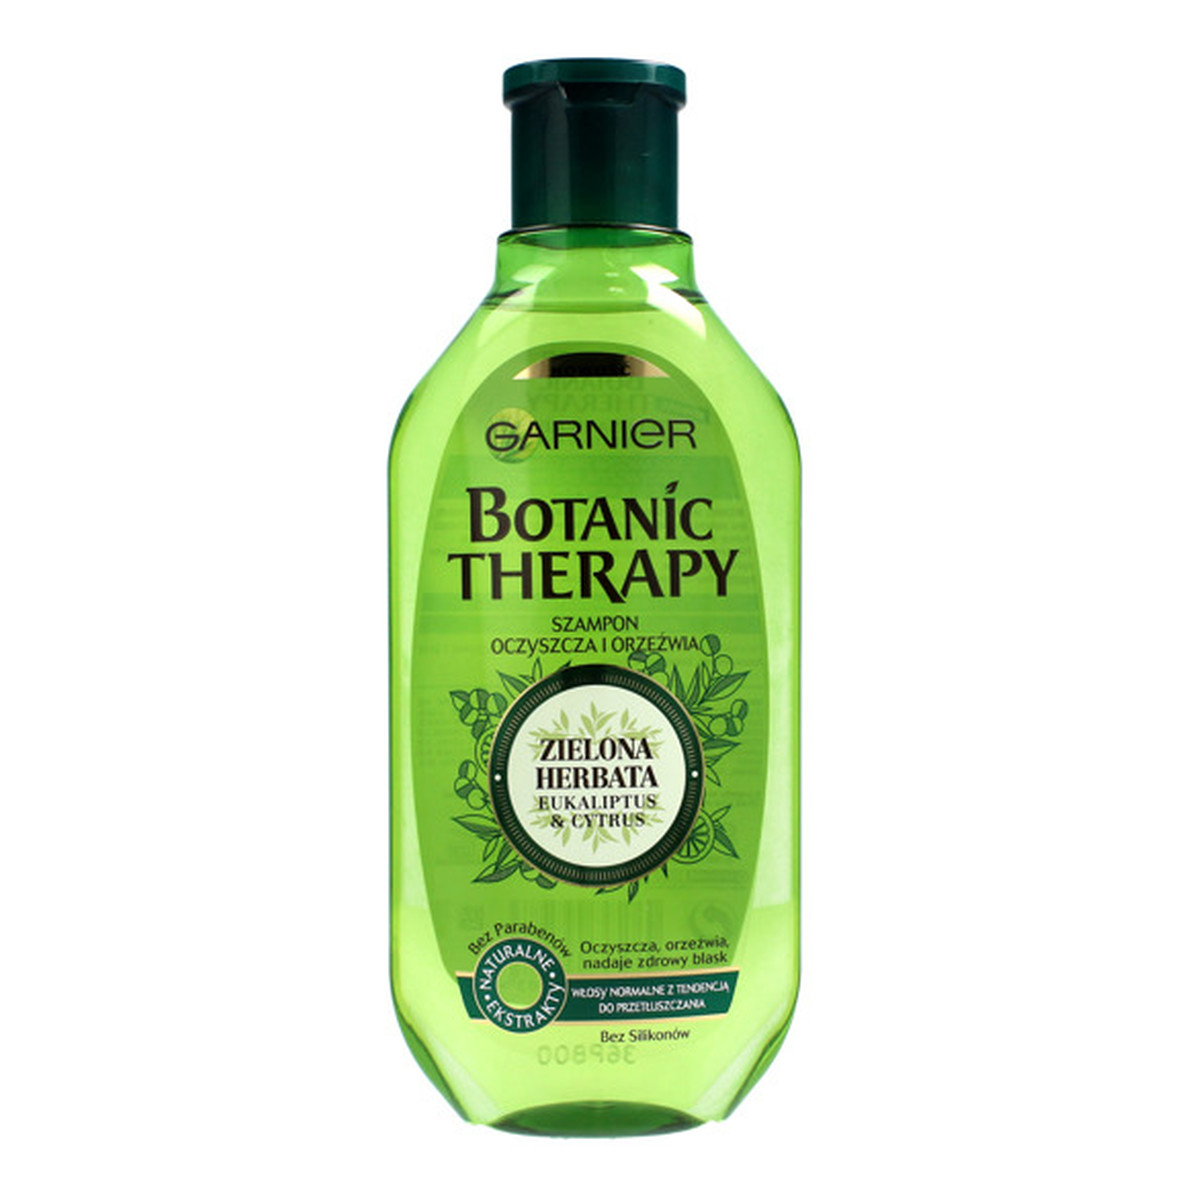 Garnier Botanic Therapy Szampon do włosów normalnych i przetłuszczających Zielona Herbata 250ml